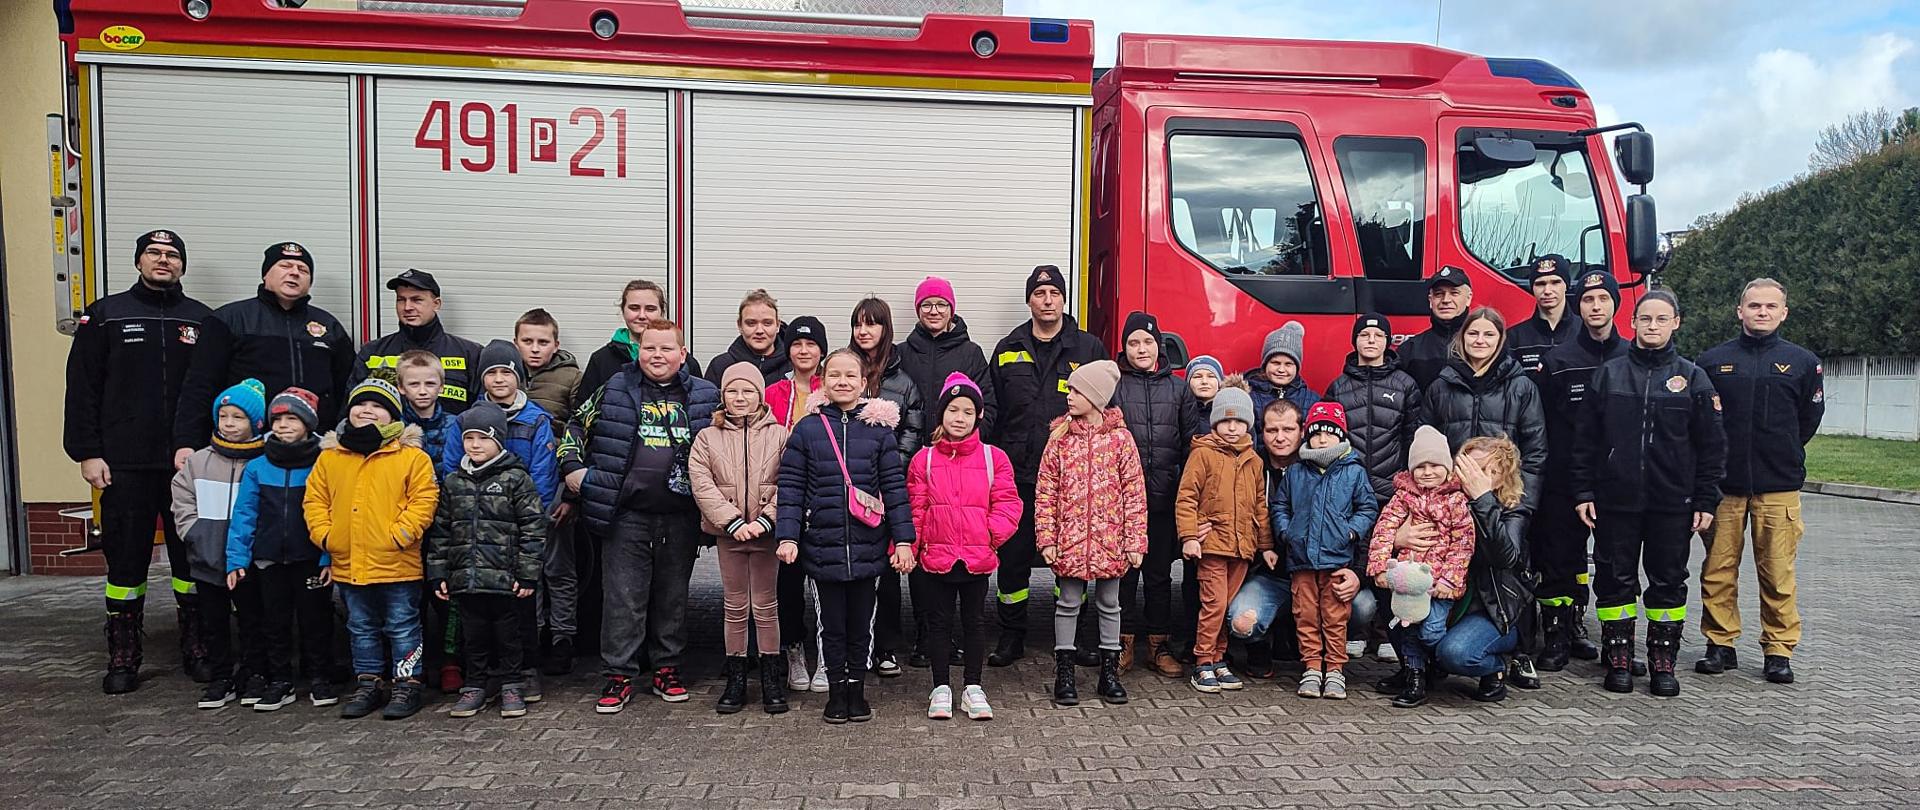 Zdjecie grupowe przedstawiające członków młodzieżowej drużyny pożarniczej w Kuklinowie oraz krotoszyńskich strażaków. Grupa dzieci wraz z opiekunami wizytowała krotoszyńską strażnicę poznając zawód strażaka. Zdjęcie wykonane na tle wozu pożarniczego